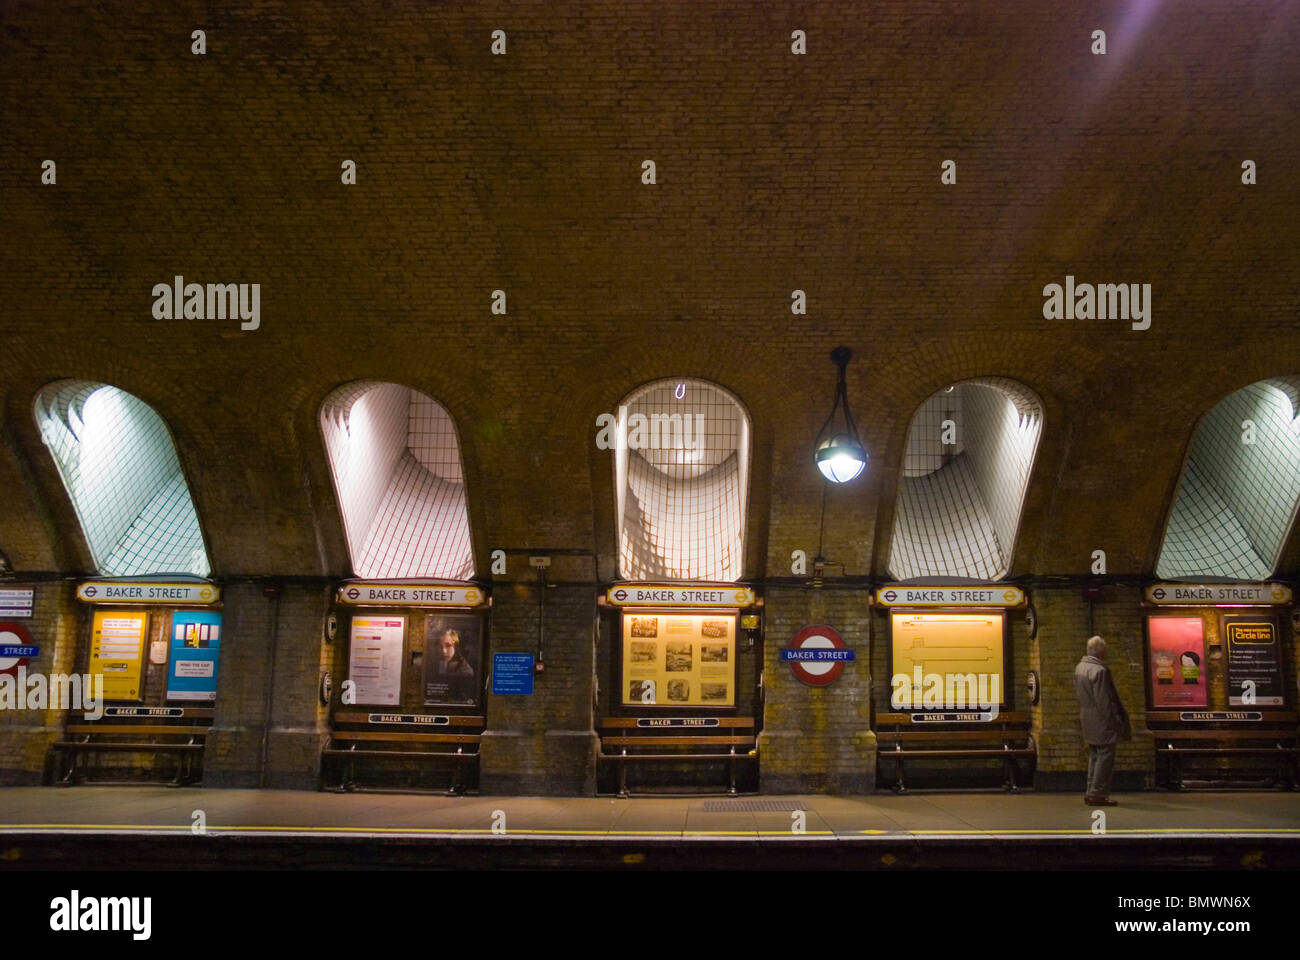 La station de métro Baker Street Marylebone Londres Angleterre Royaume-Uni Europe centrale Banque D'Images